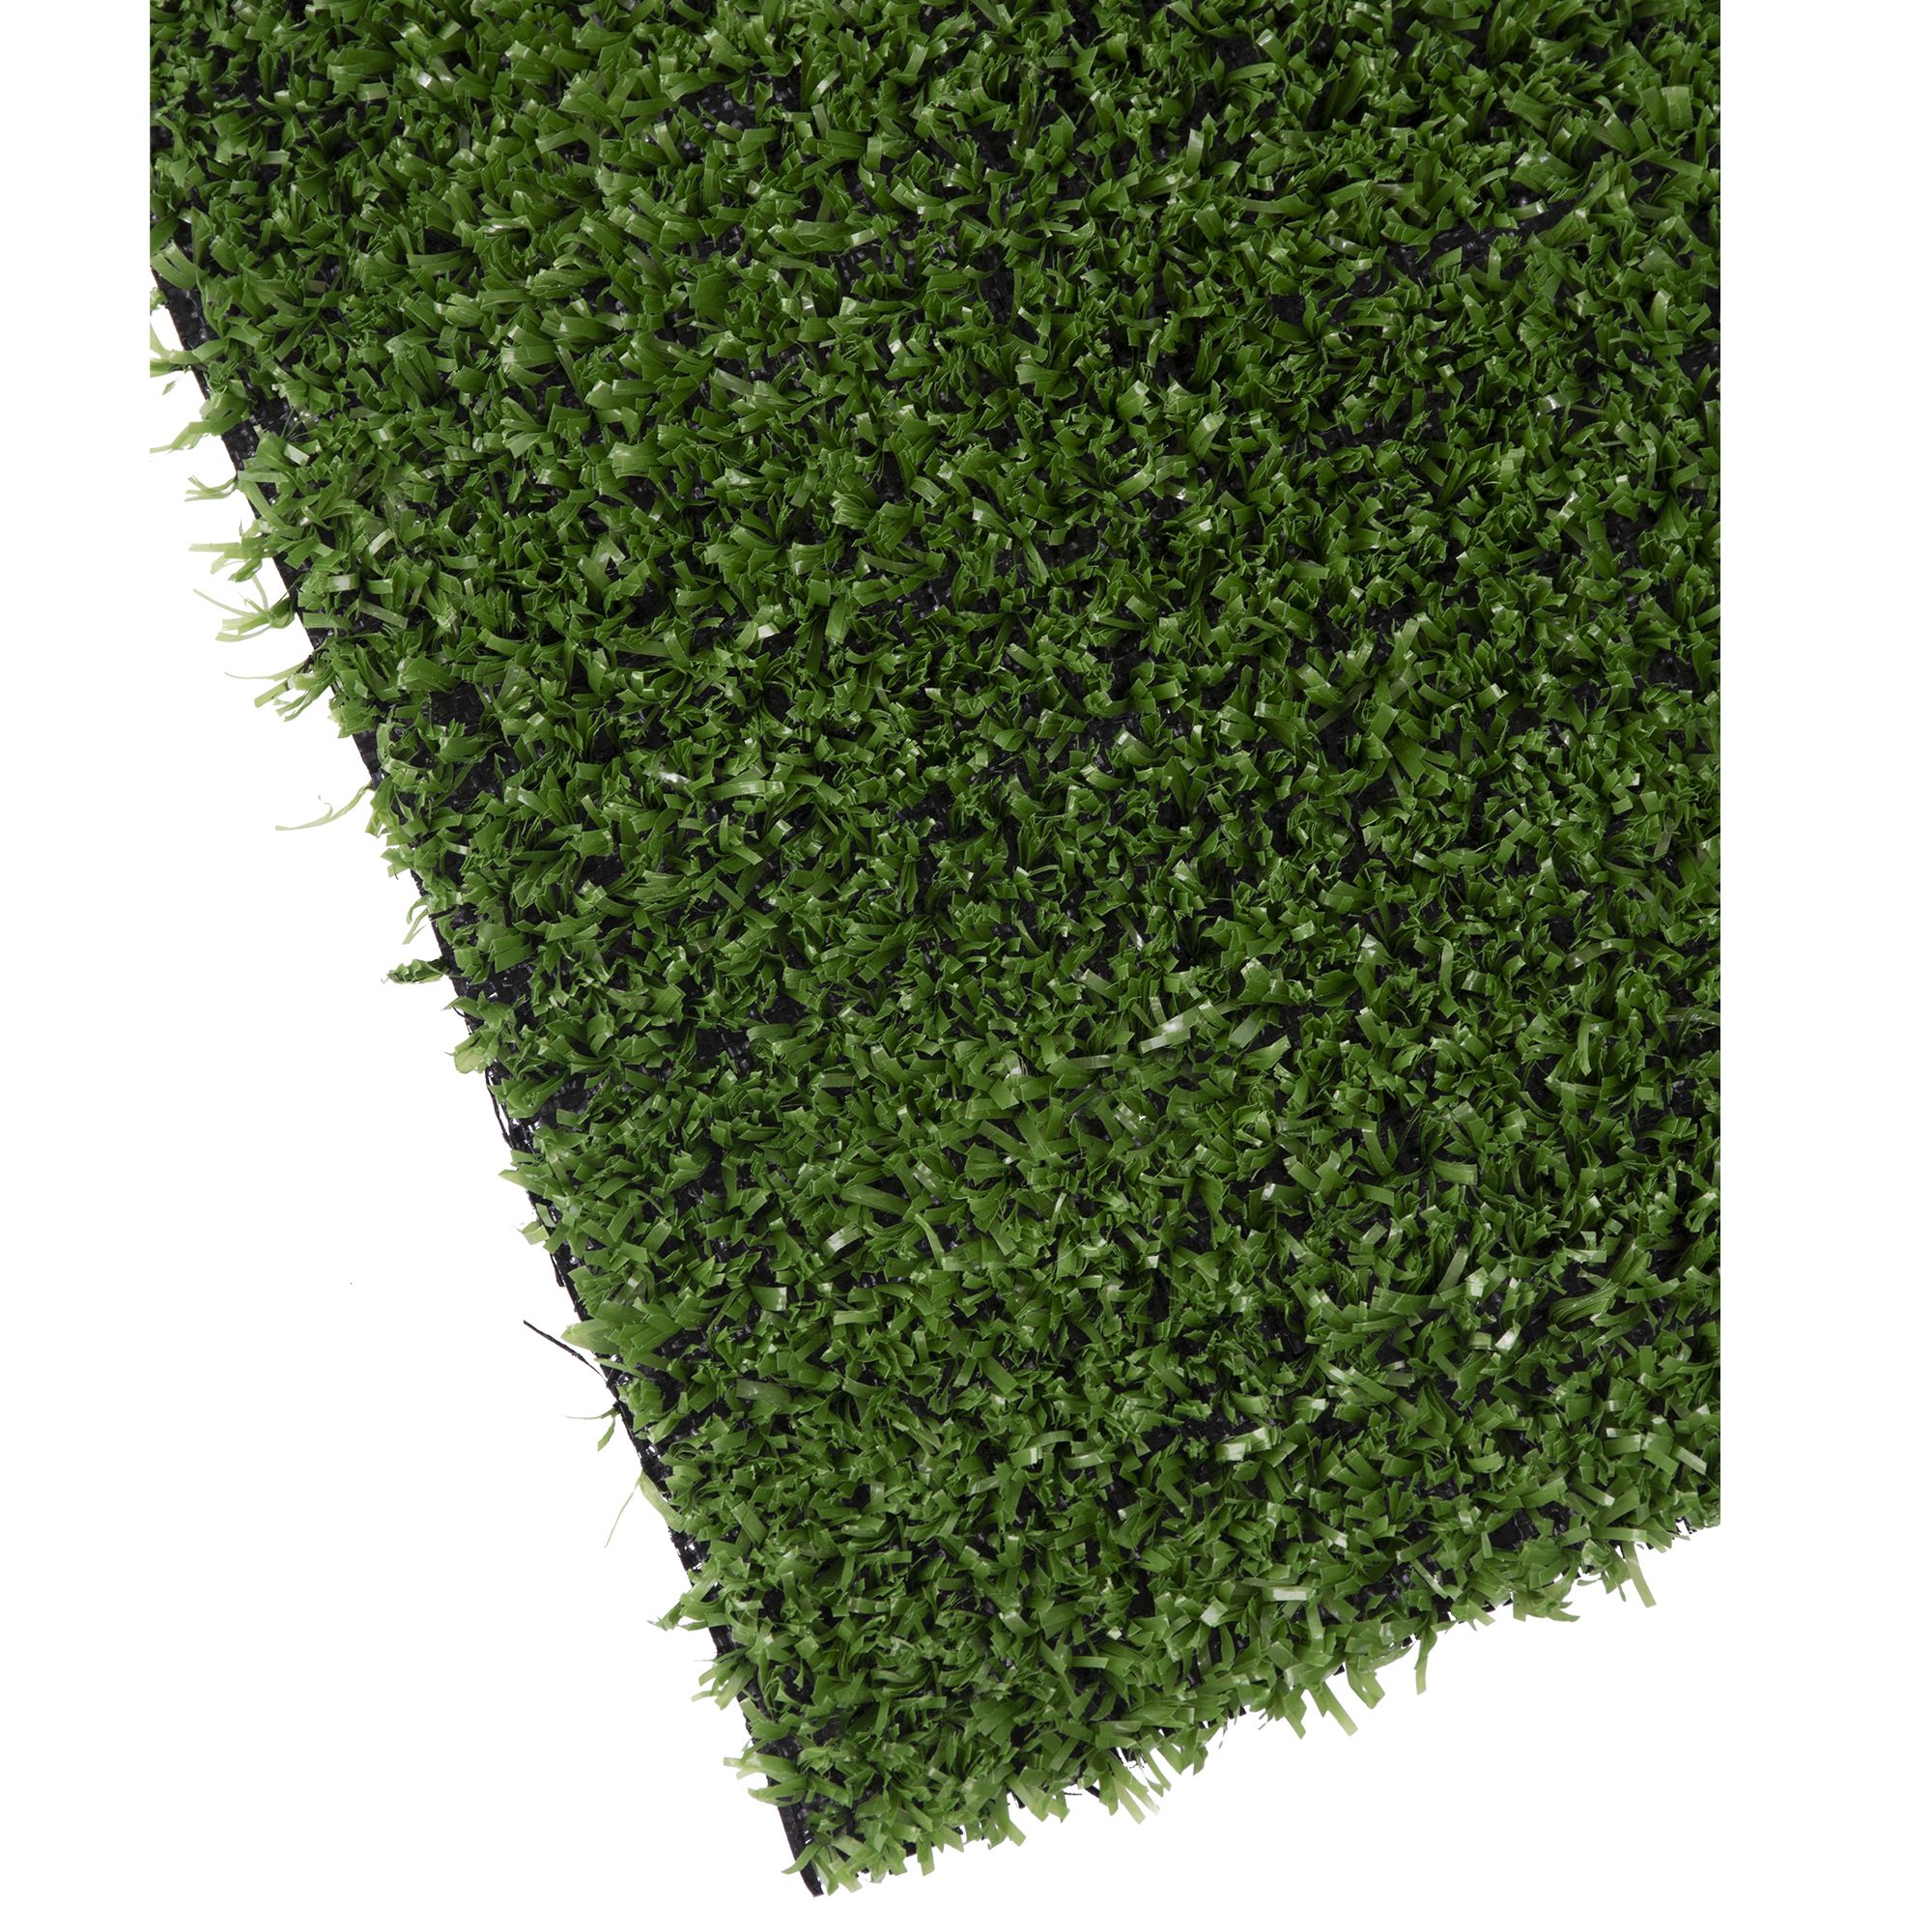 Umělý trávník, 7mm, 100cm x 5m, zelený, STREND PRO 3.375000 Kg GIGA Sklad20 2171512 12